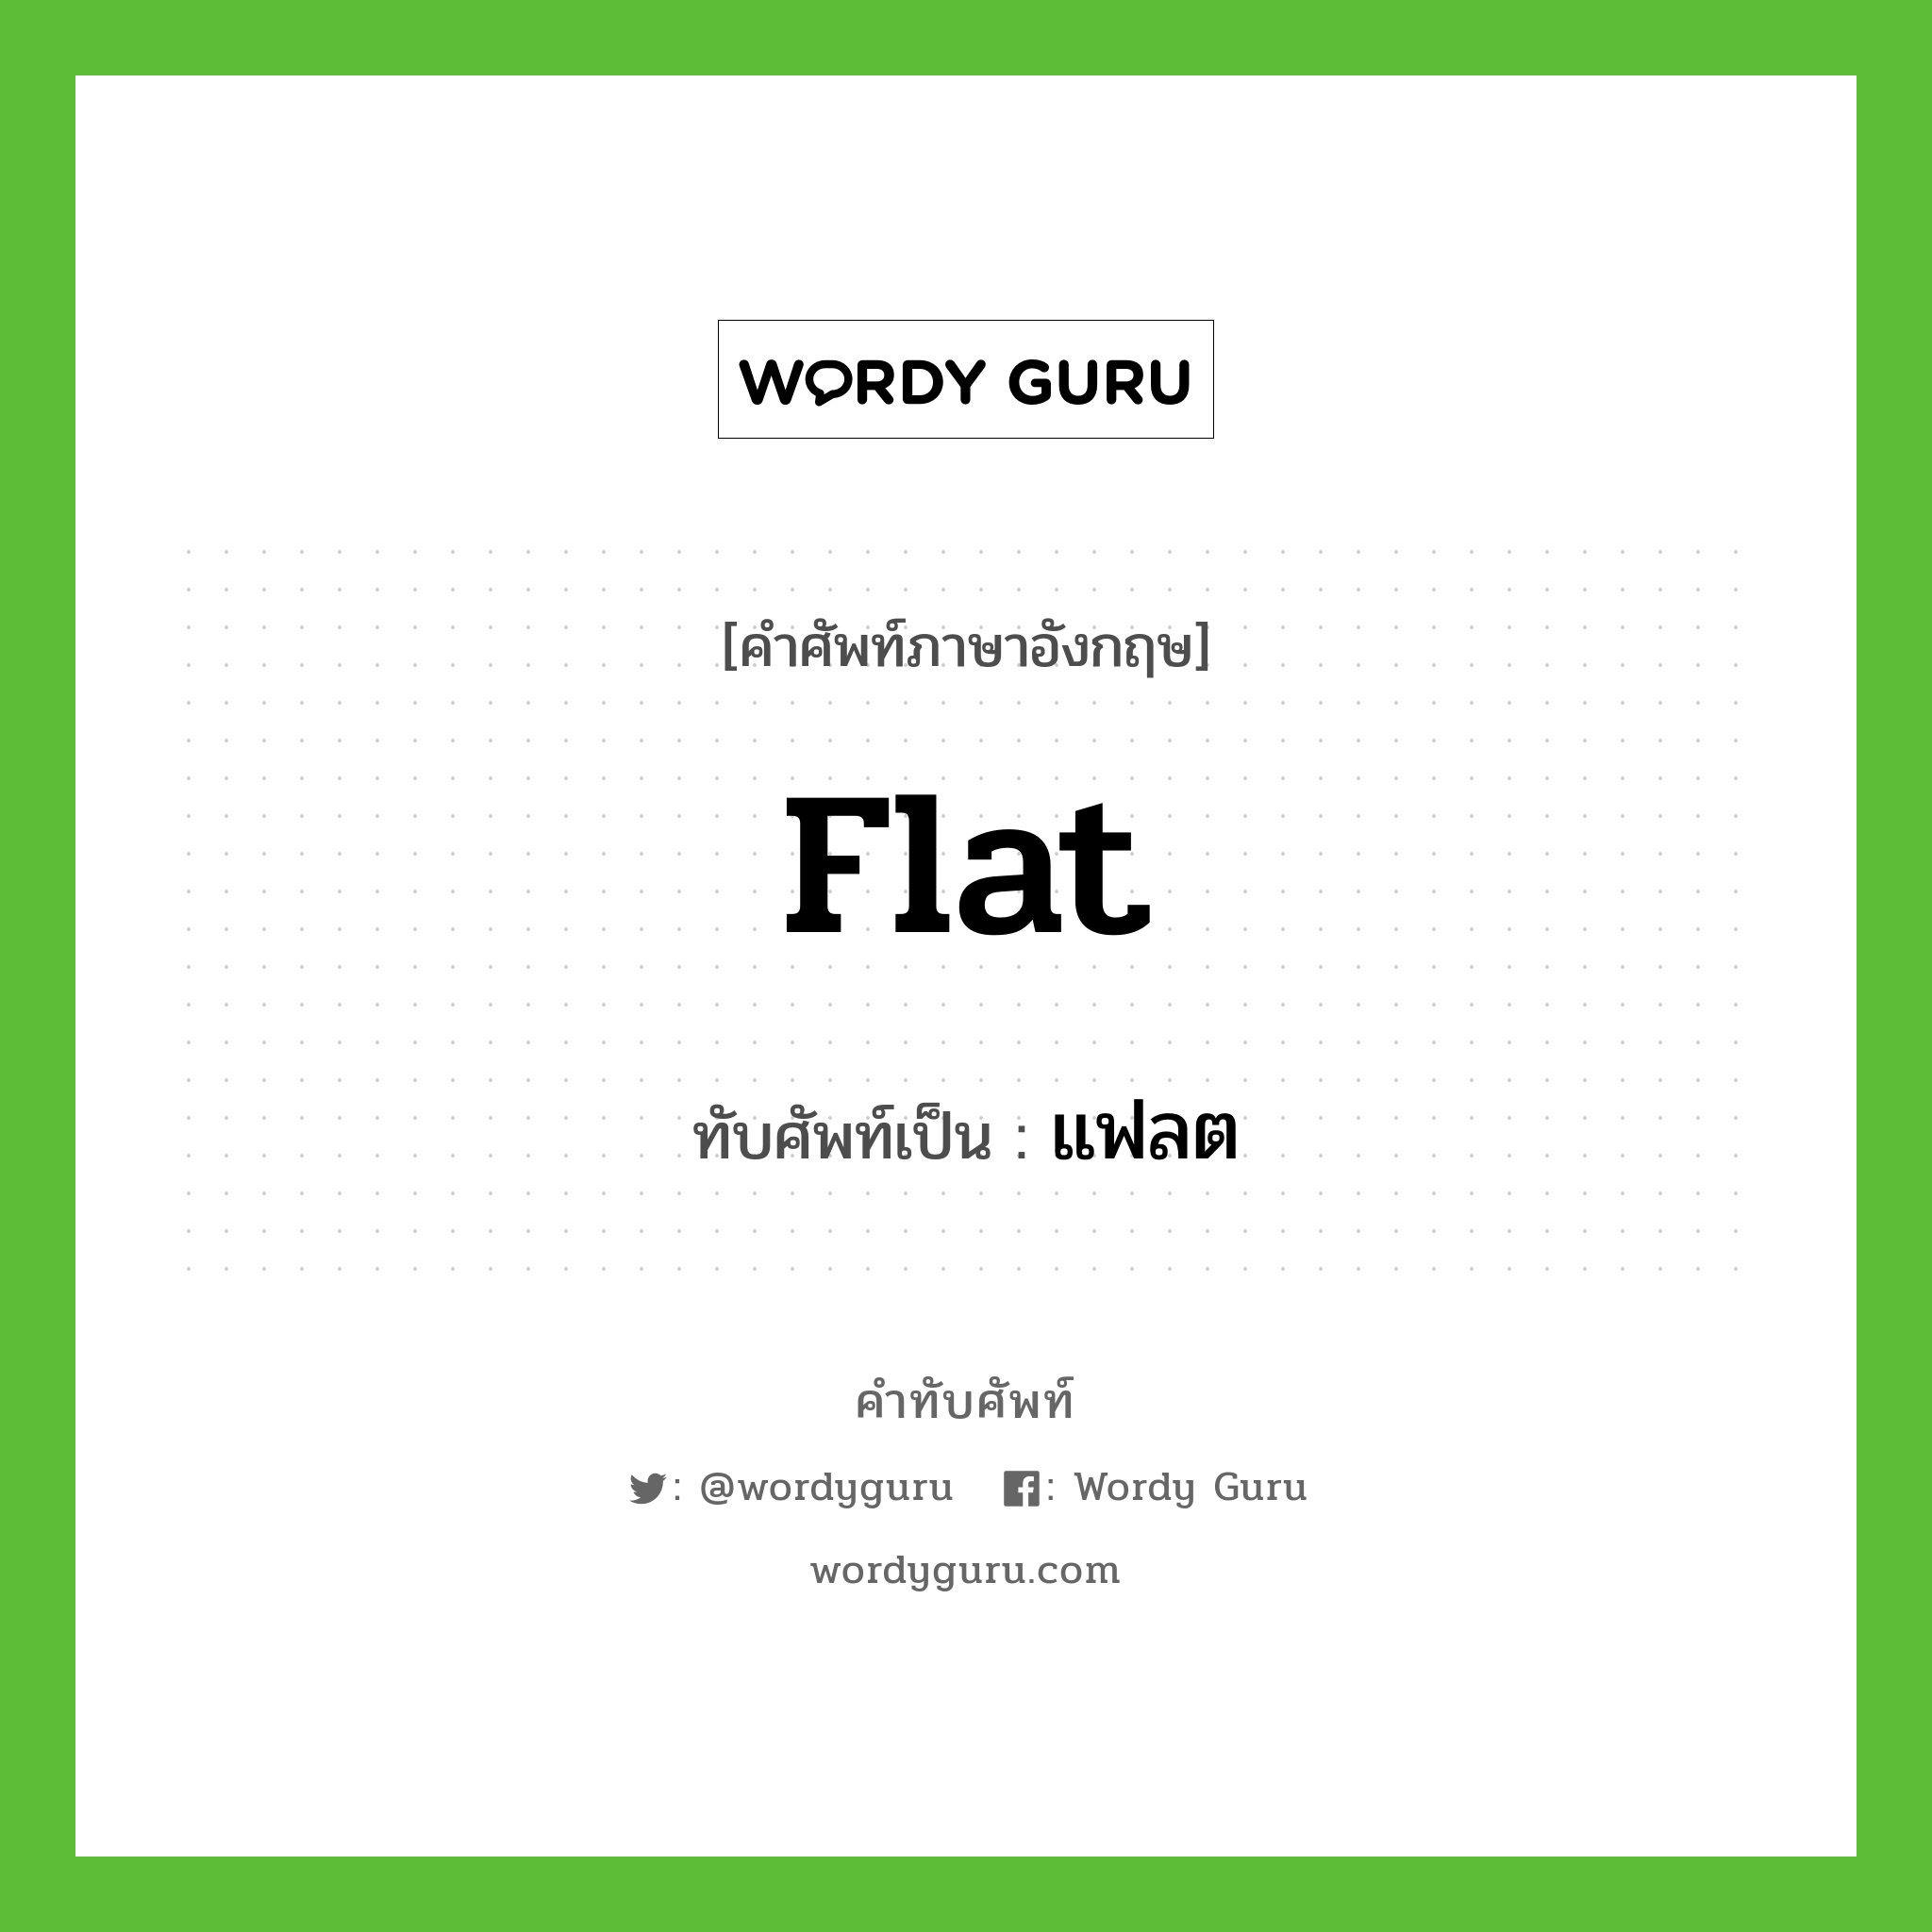 flat เขียนเป็นคำไทยว่าอะไร?, คำศัพท์ภาษาอังกฤษ flat ทับศัพท์เป็น แฟลต